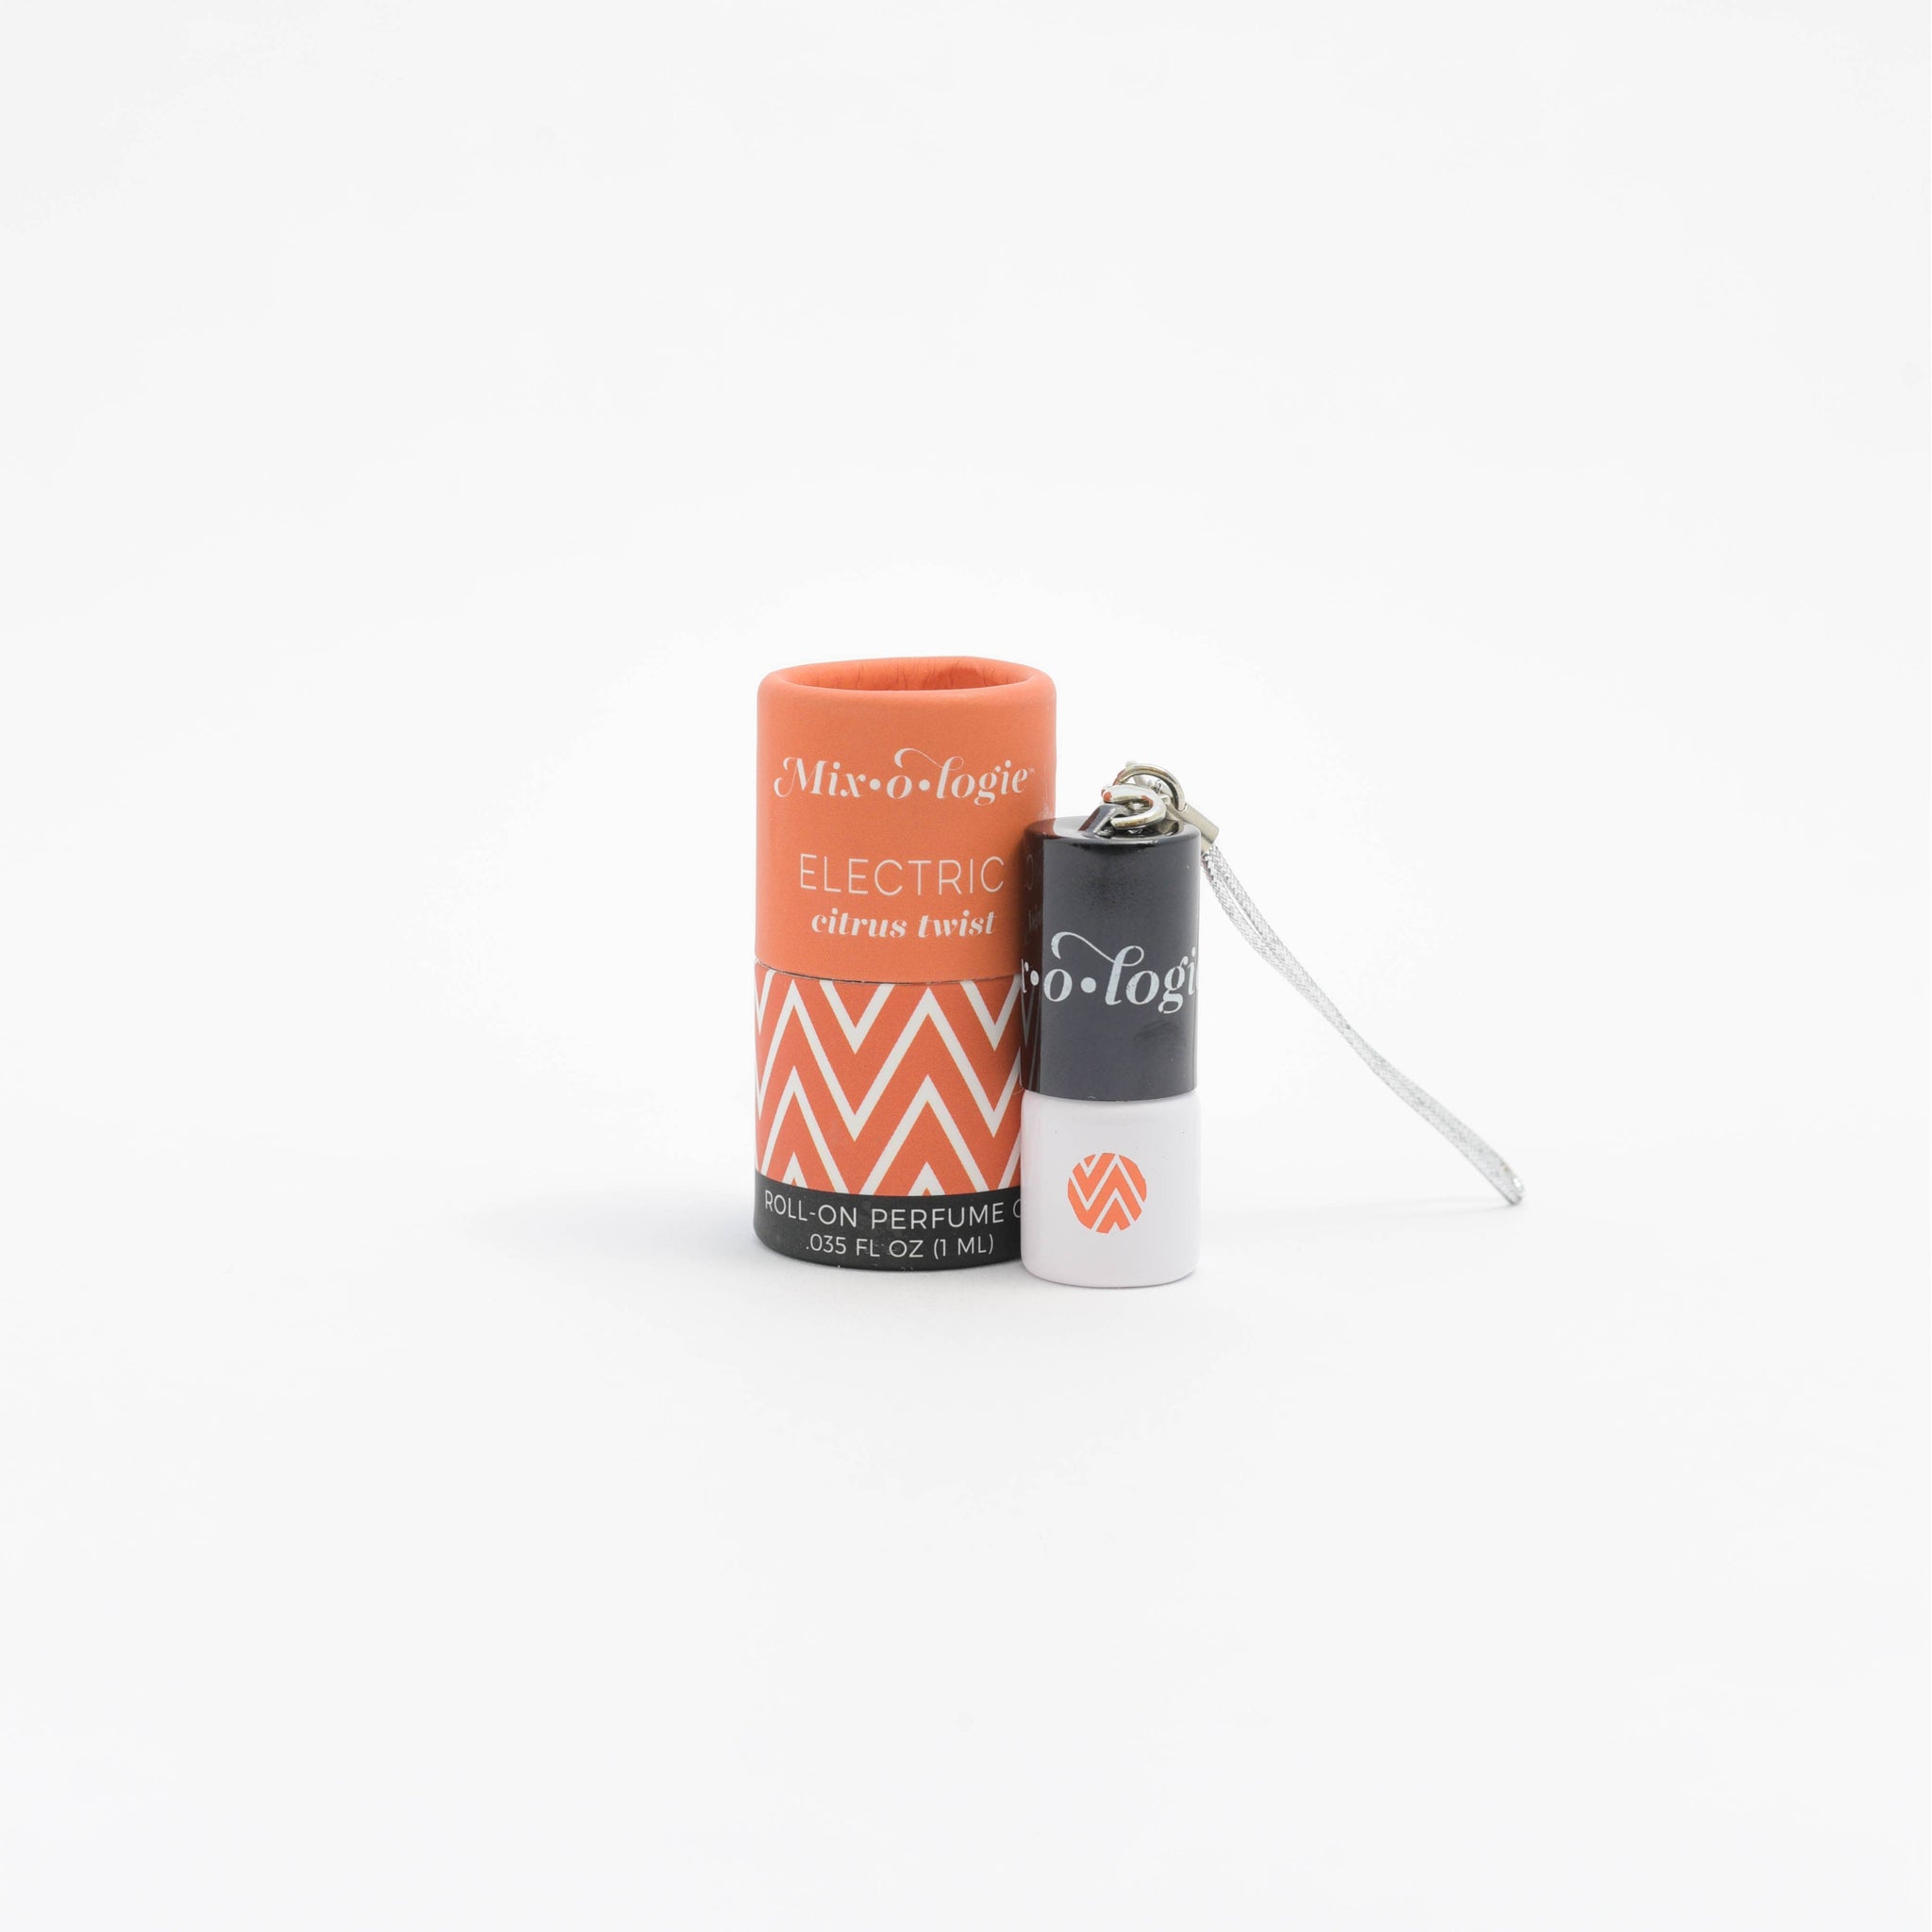 Electric (citrus twist) Mini Roll-On Perfume (1 mL) Keychain